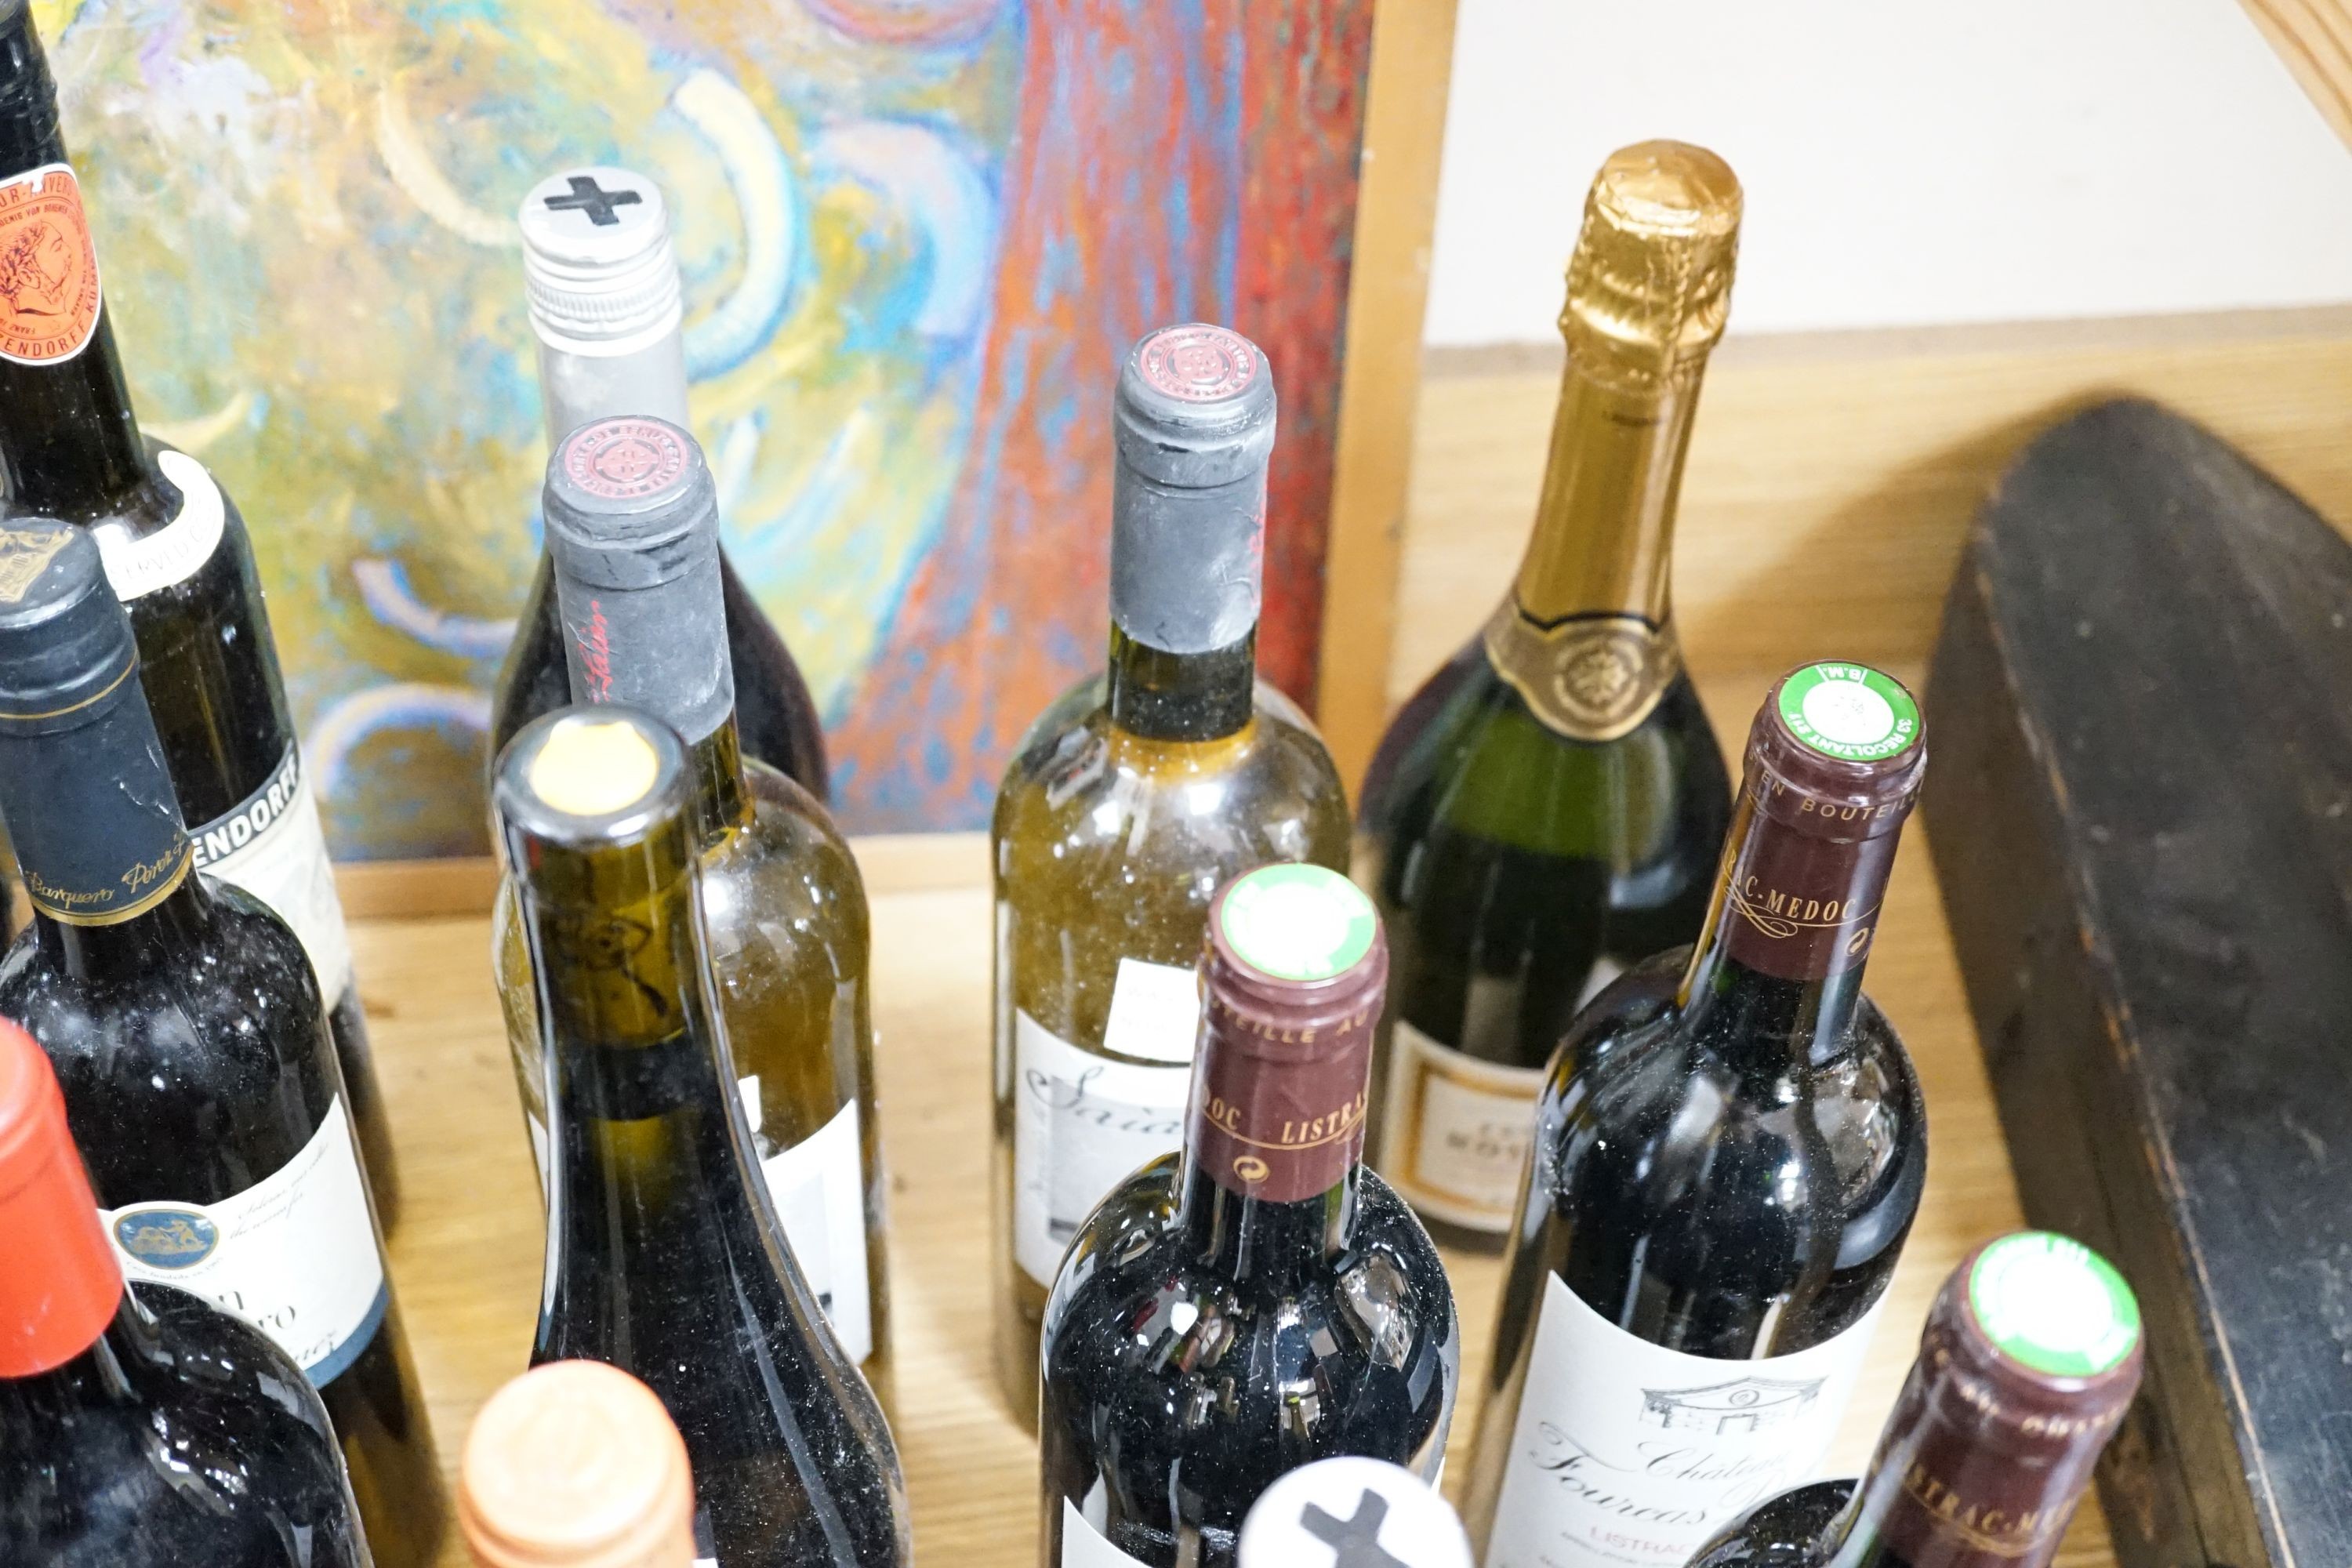 Twenty nine assorted bottles of wine is etc. including Les Tourelles de Longueville, 2003, Chateau Fourcas Dupre, 2000, Perrier Jouet Grand Brut Champagne, Chateau Sigognac, 1985 and Cote Rotie, 2001.